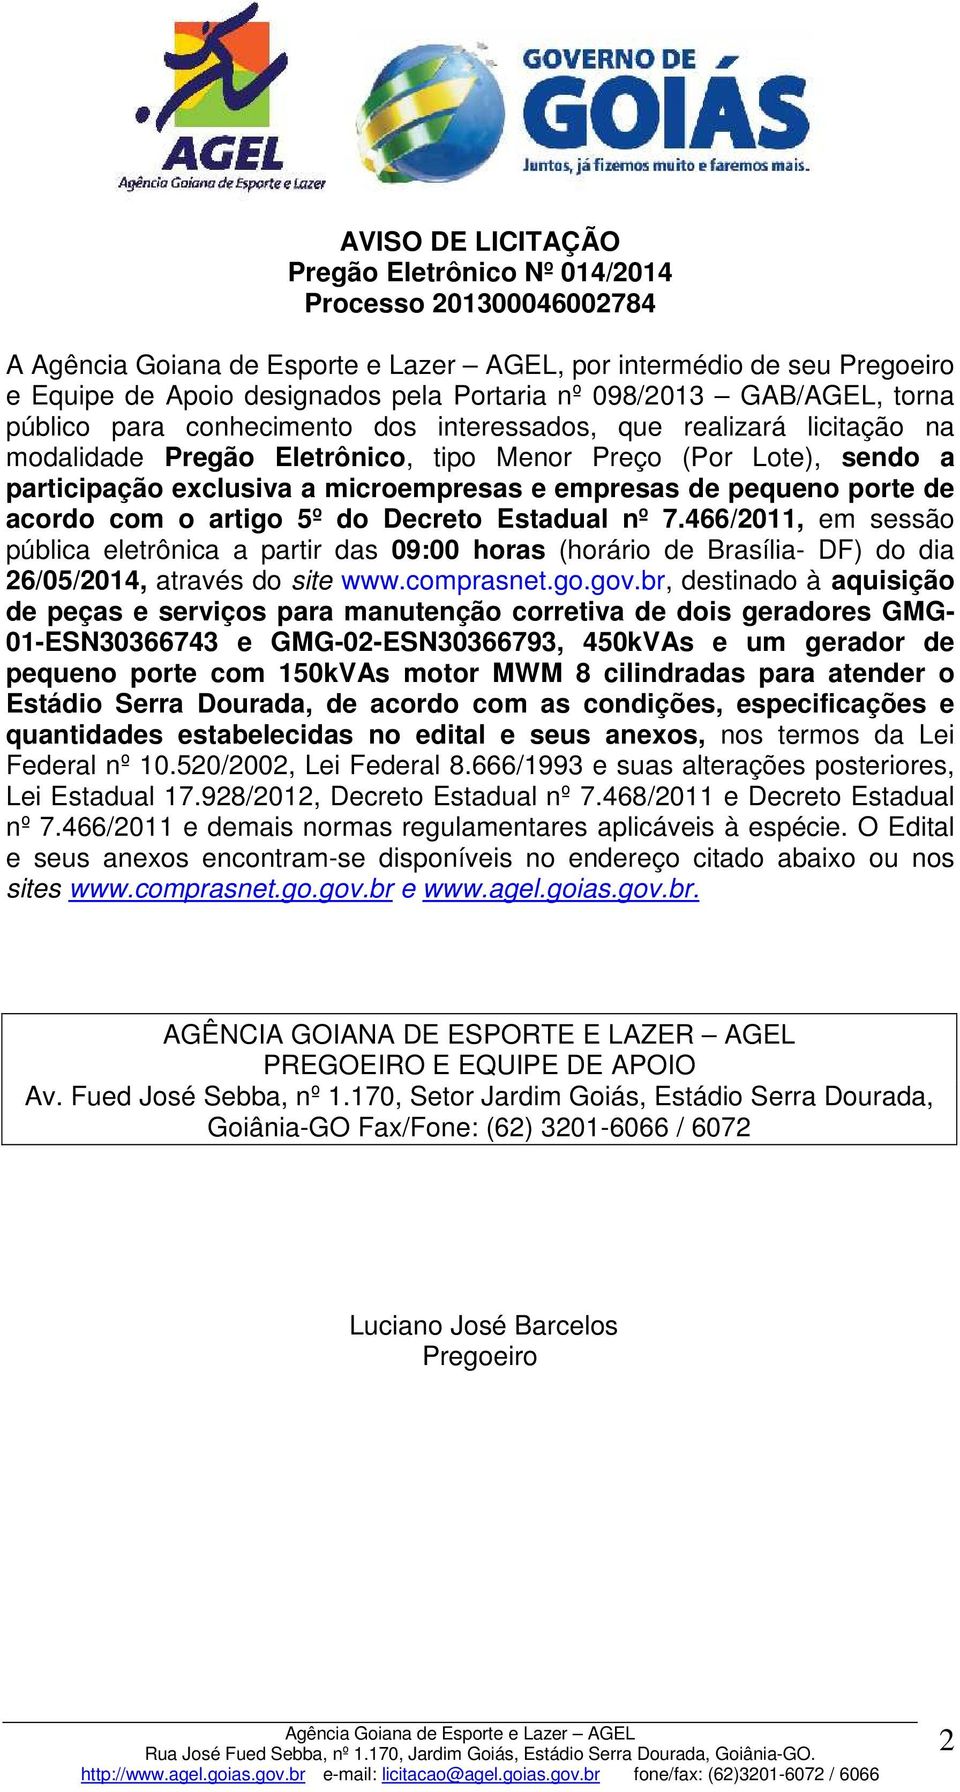 acordo com o artigo 5º do Decreto Estadual nº 7.466/2011, em sessão pública eletrônica a partir das 09:00 horas (horário de Brasília- DF) do dia 26/05/2014, através do site www.comprasnet.go.gov.